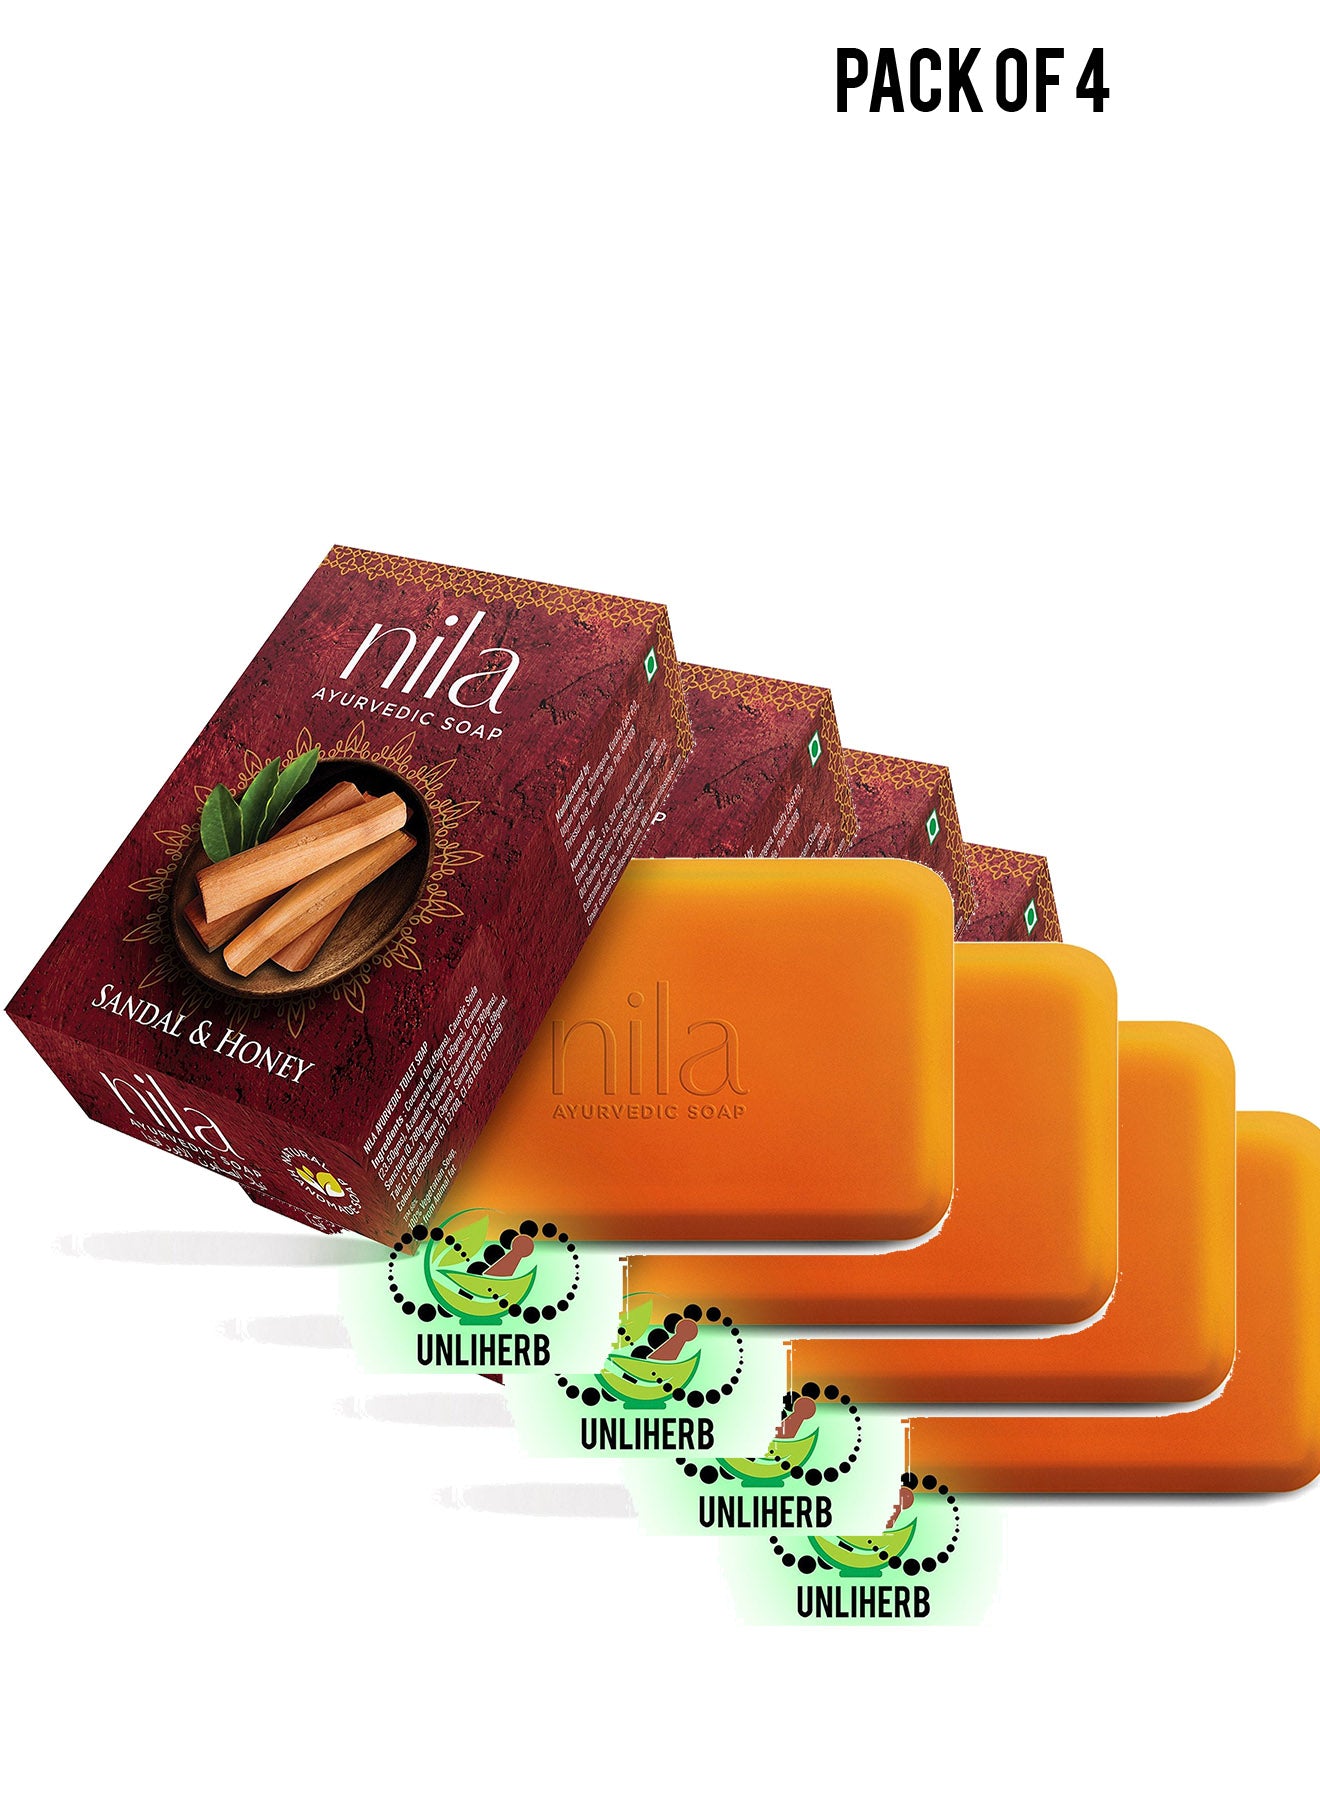 Nila  Sandal  Honey Ayurvedic Soap 75g Value Pack of 4 